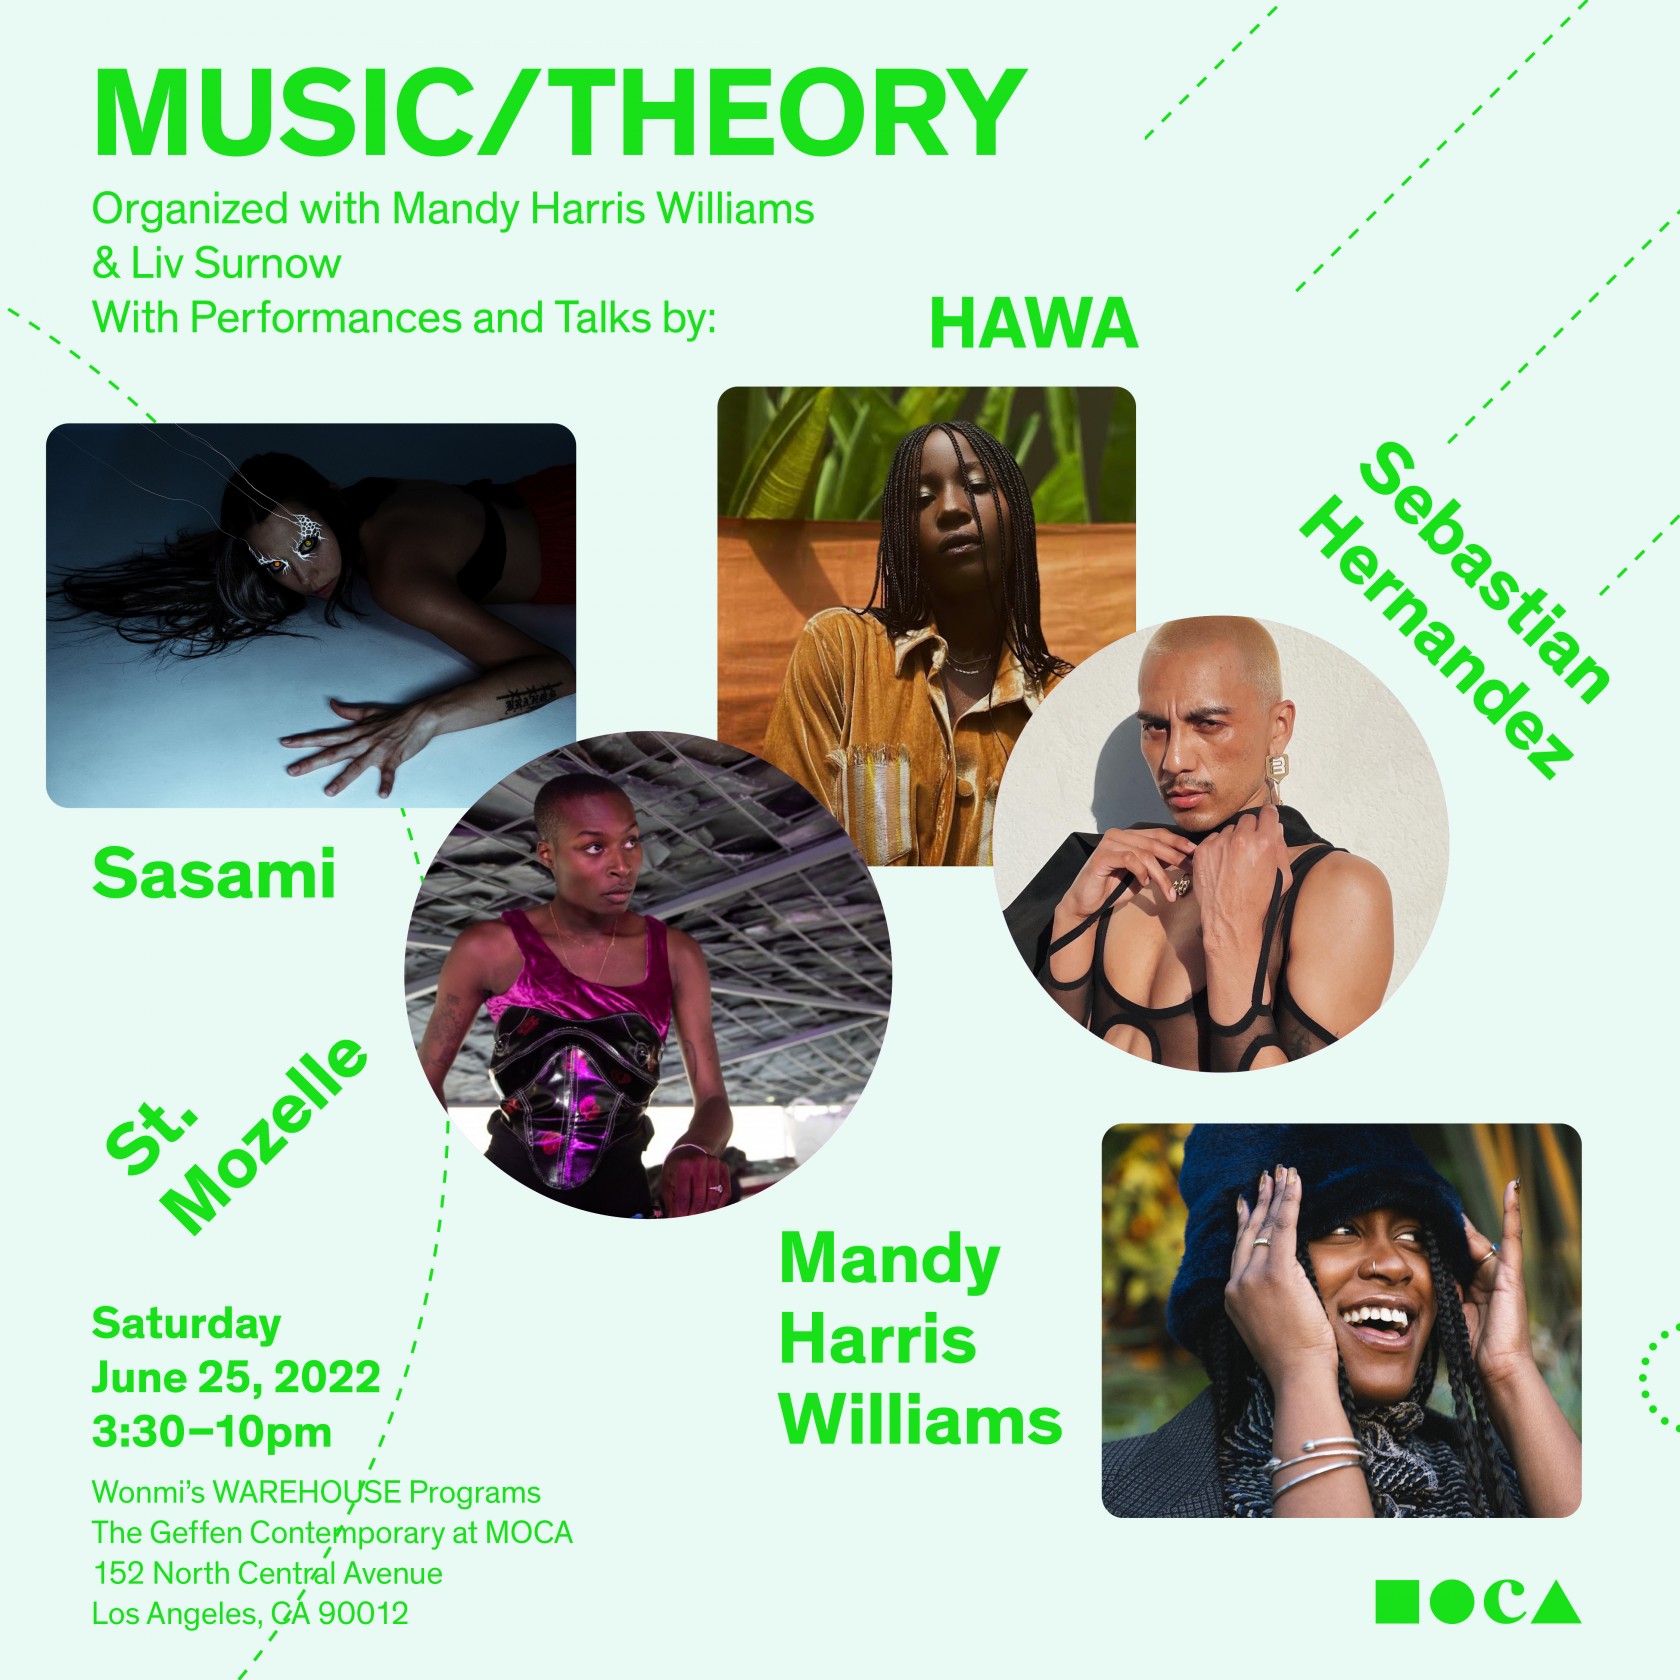 Music/Theory at MOCA